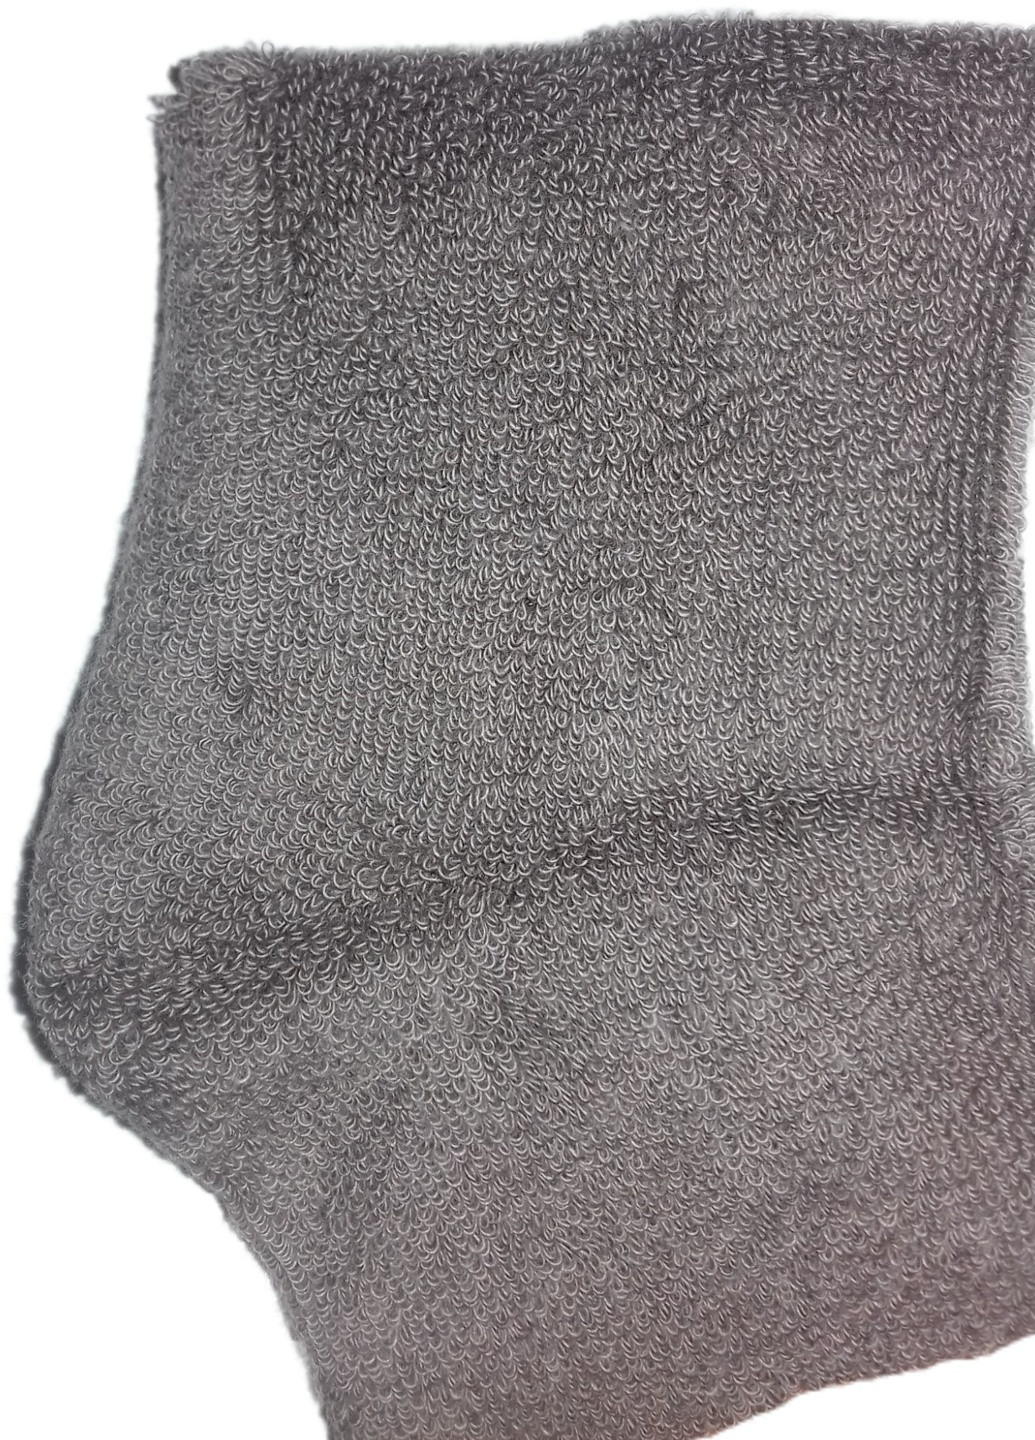 Шкарпетки чоловічі ТМ "Нова пара" плюш 411 середня висота НОВА ПАРА з ущільненім носком однотонні темно-сірі повсякденні